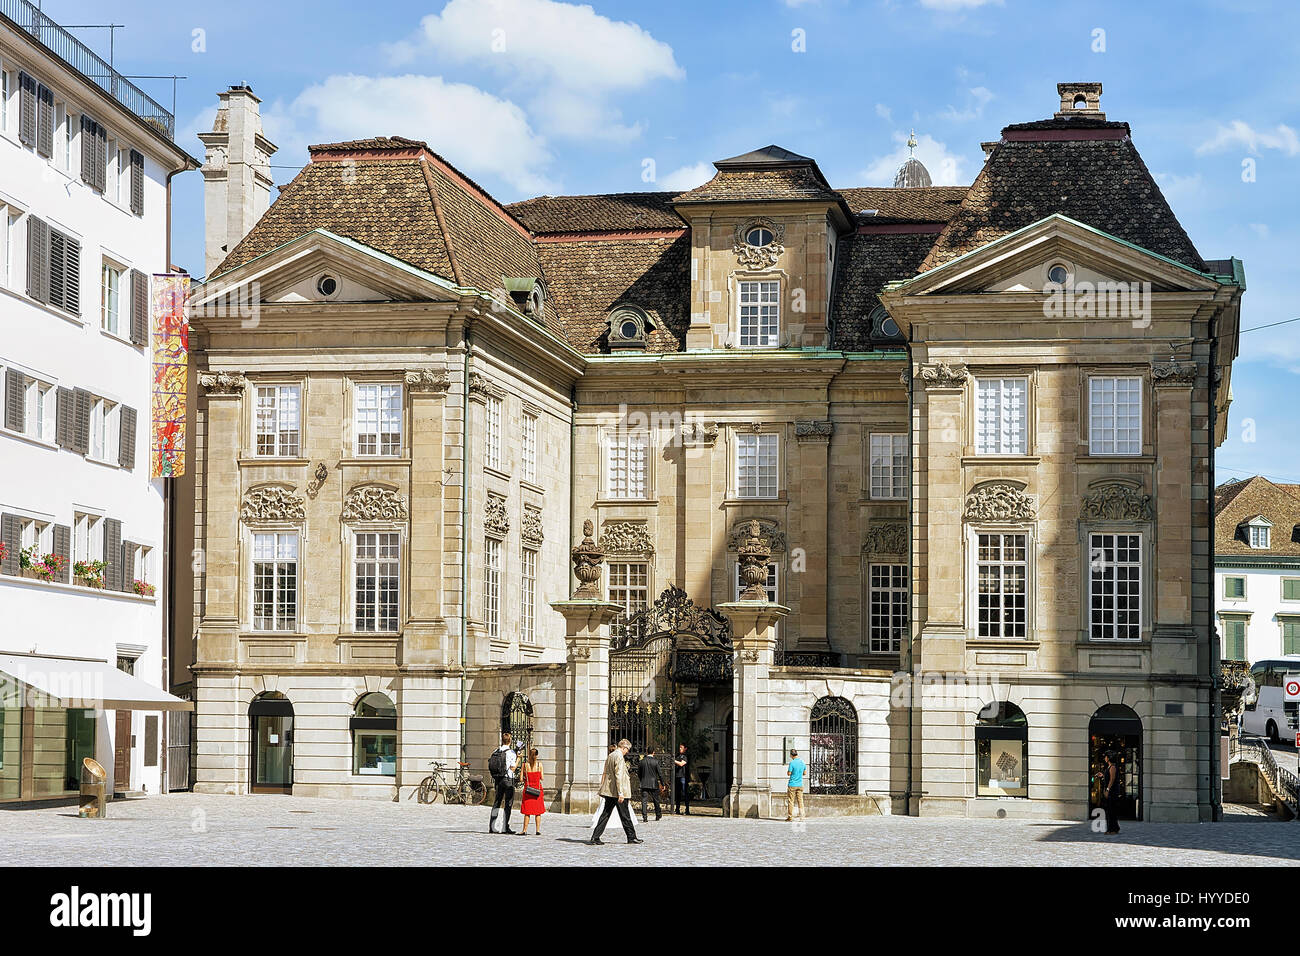 Zurigo, Svizzera - 2 Settembre 2016: persone al Palace a Munsterhof trimestre nel centro della città di Zurigo, Svizzera Foto Stock